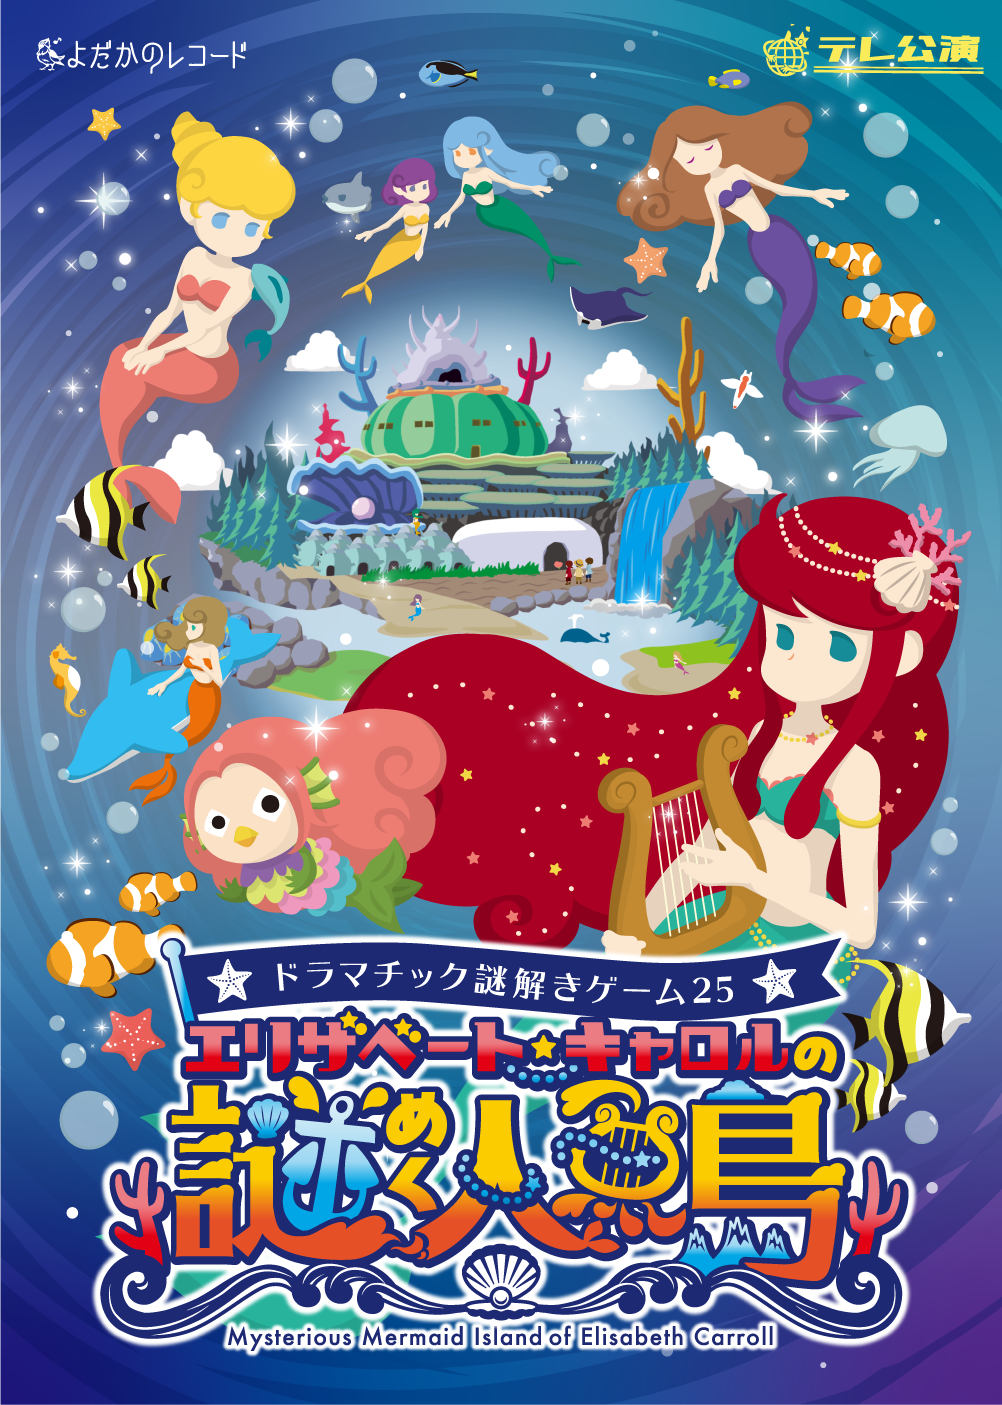 ドラマチック謎解きゲーム25「エリザベート・キャロルの謎めく人魚島」【ソロチケット】